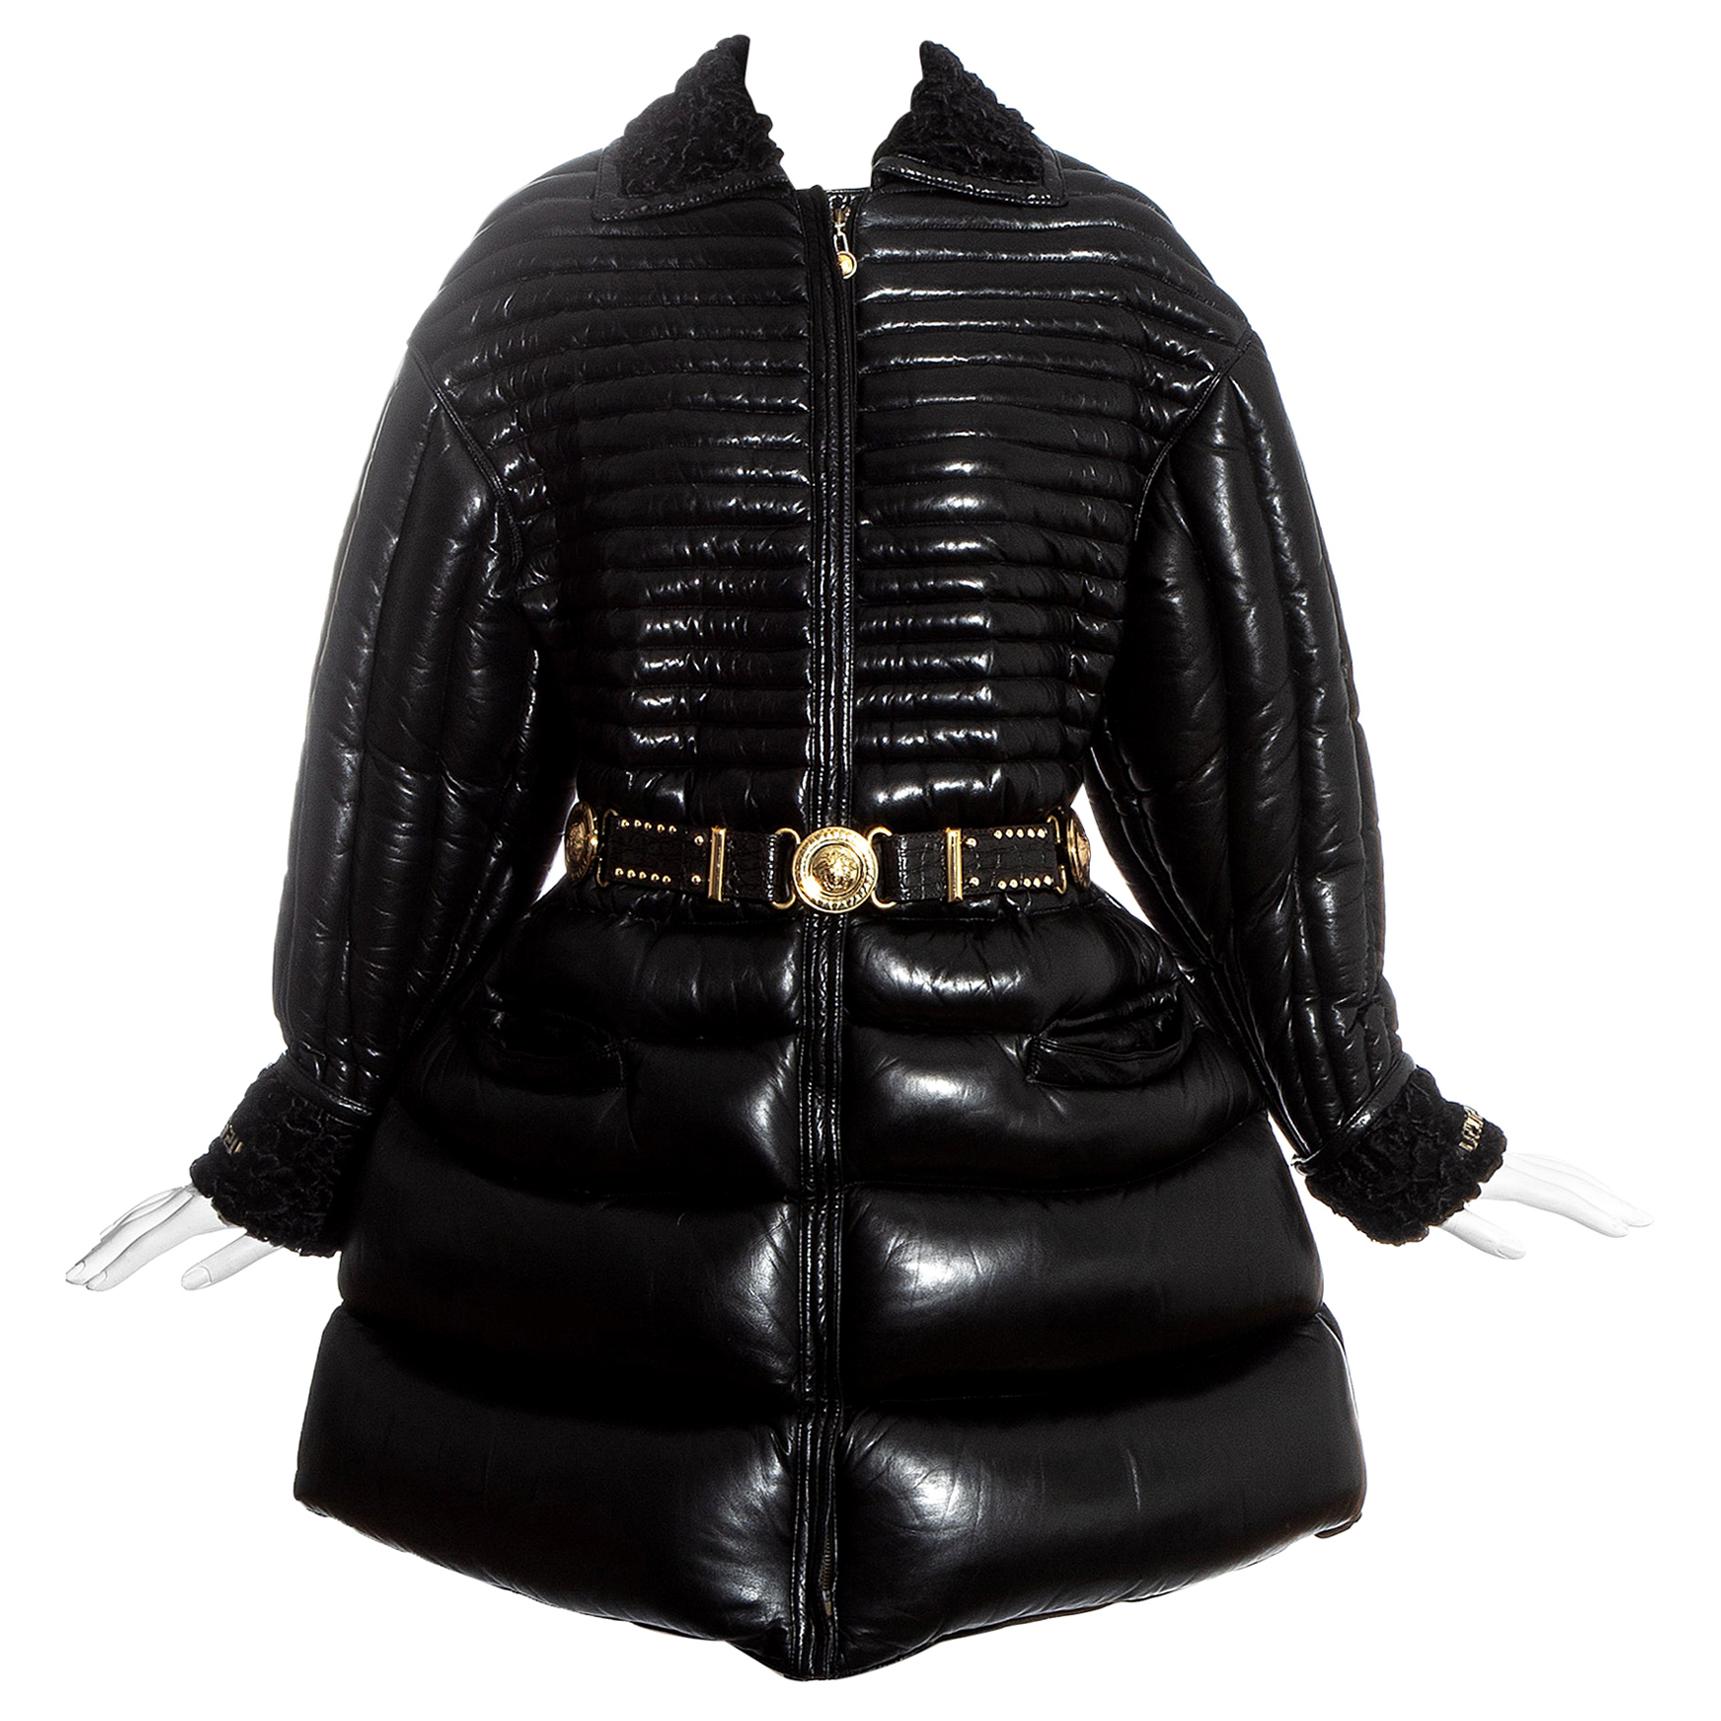 Manteau et ceinture en duvet de cuir noir matelassé, Gianni Versace, fw 1992